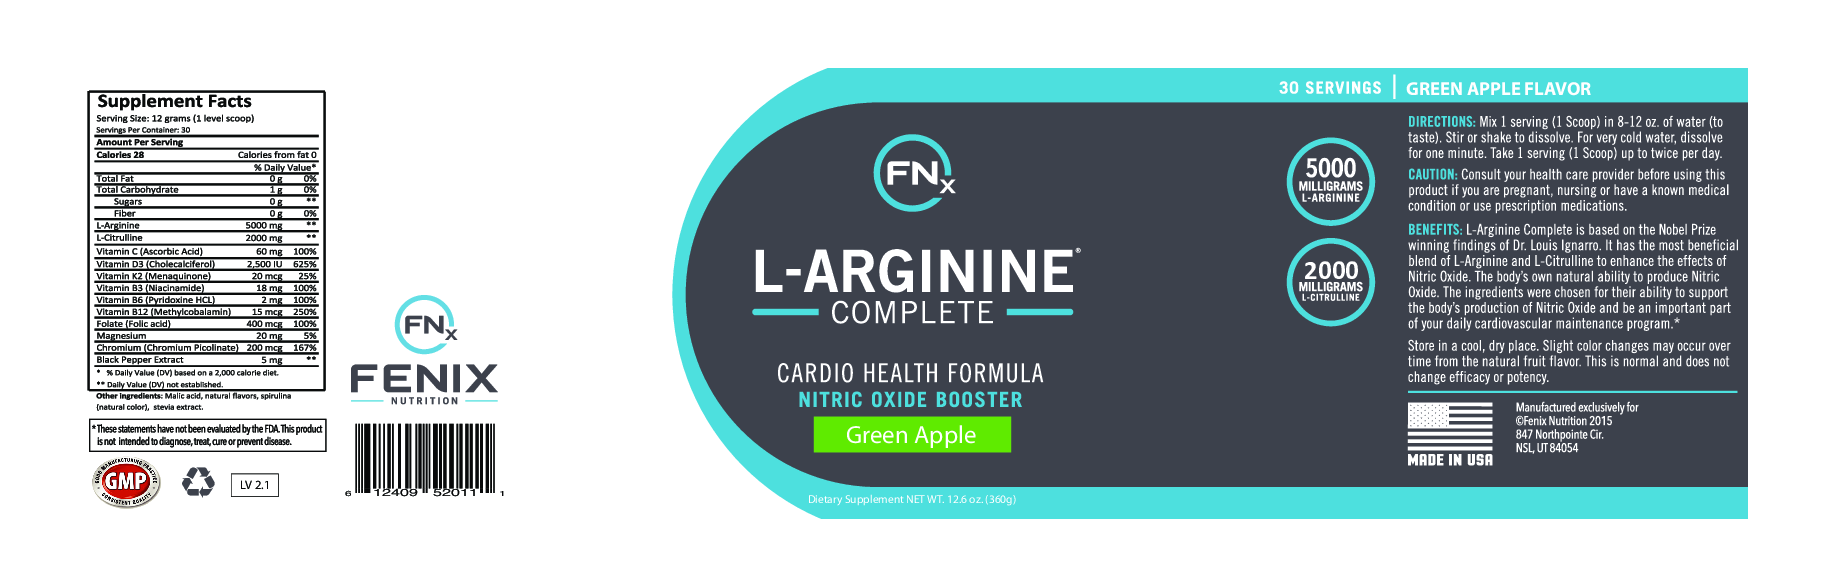 Fenix Nutrition L-Arginine Complete Green Apple 30 srvng